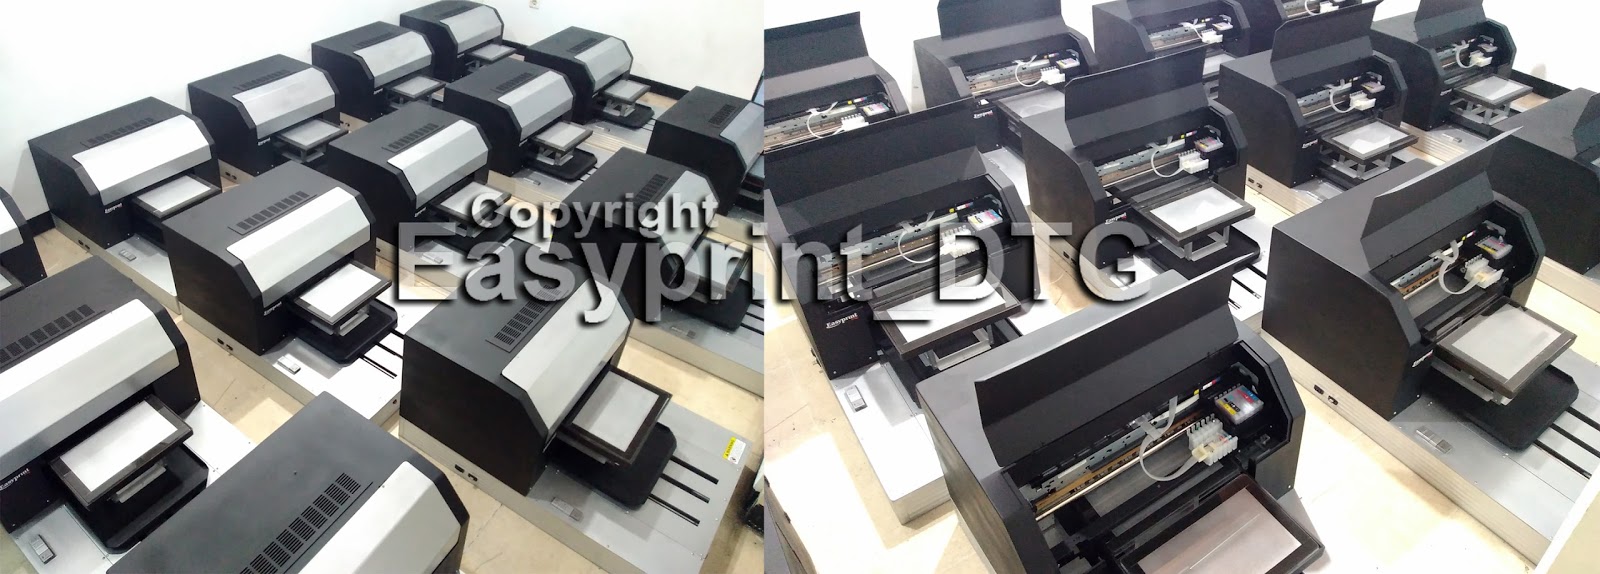  Printer  DTG  Bali  Solusi Printer  DTG  harga Murah 